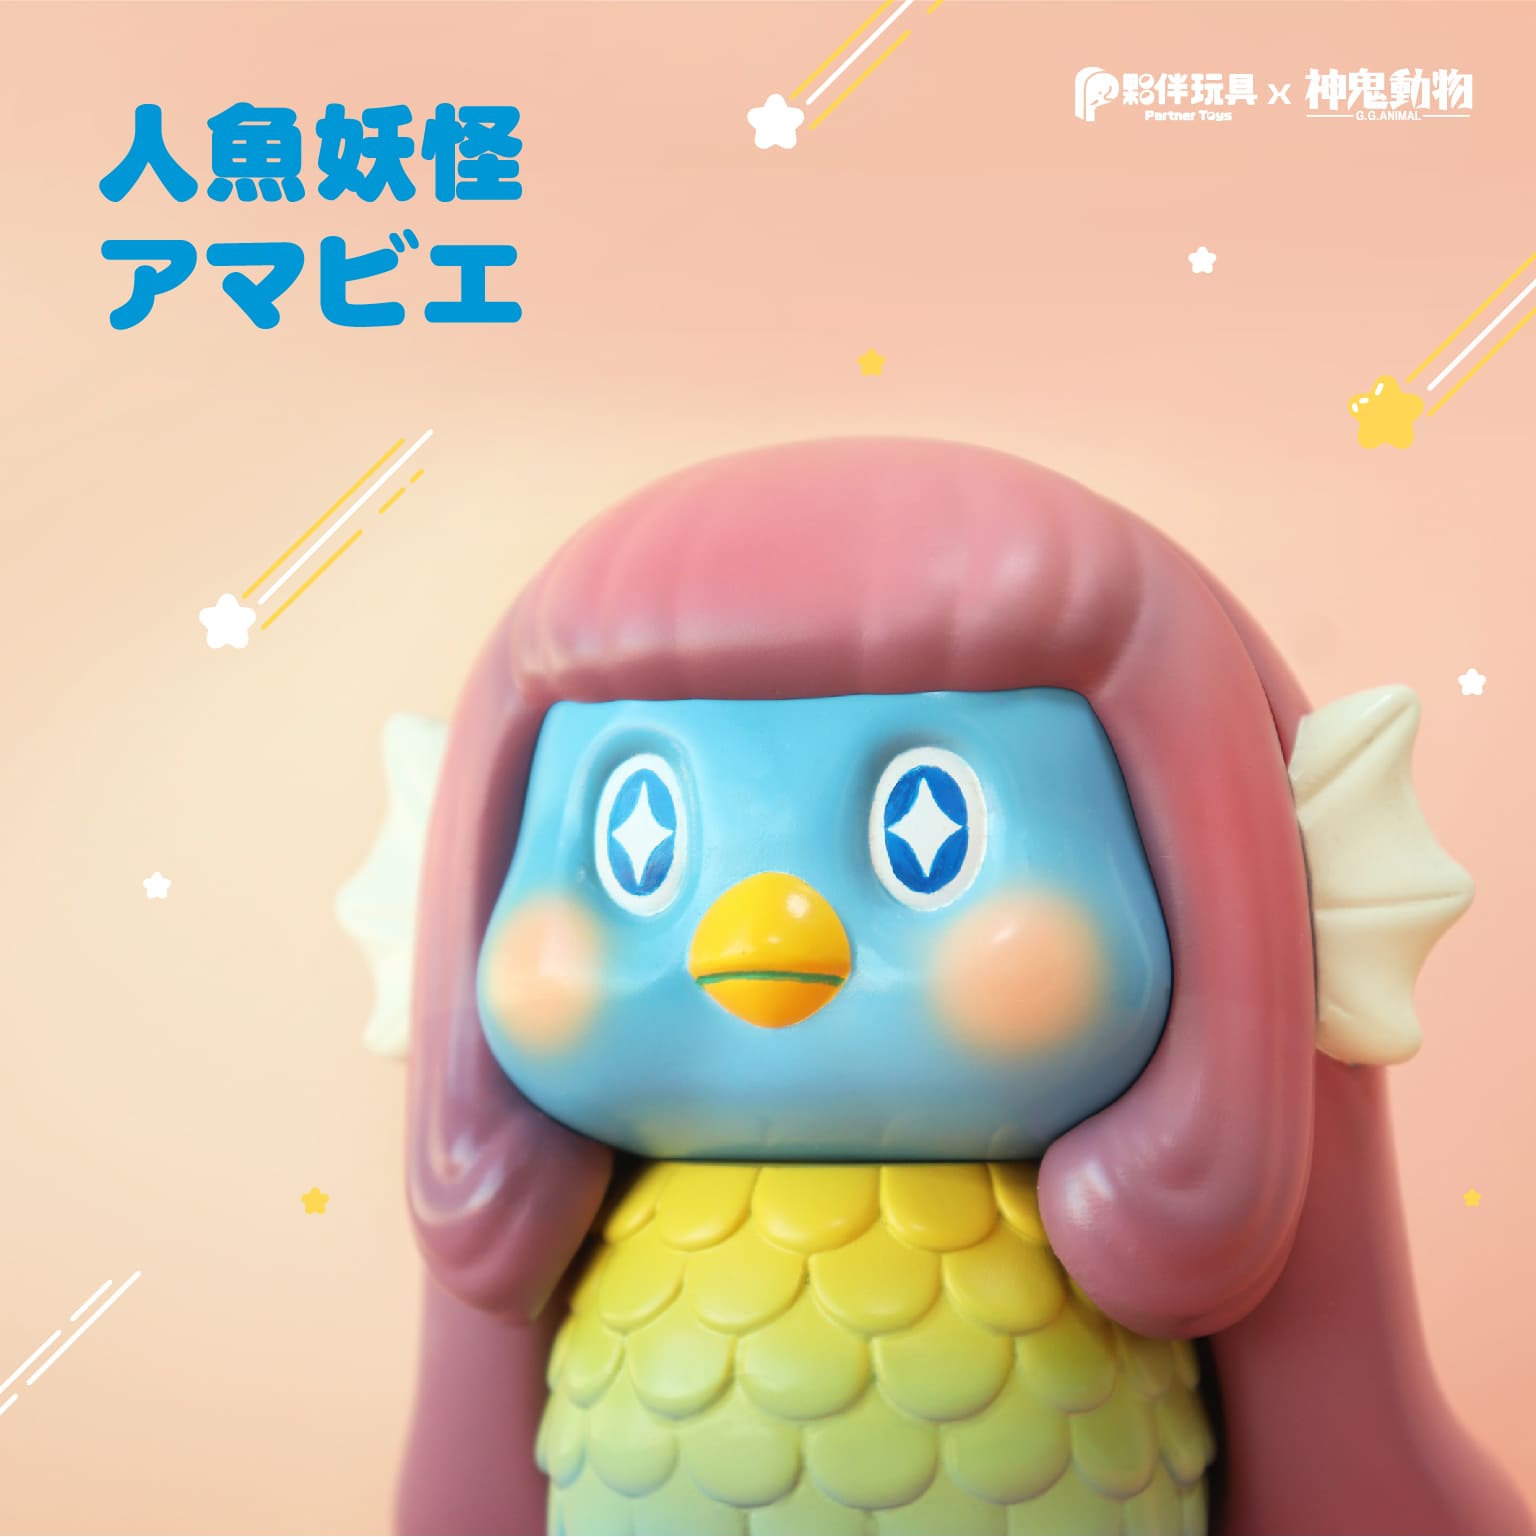 【現貨商品】展場限定抽選「人魚妖怪」軟膠玩具